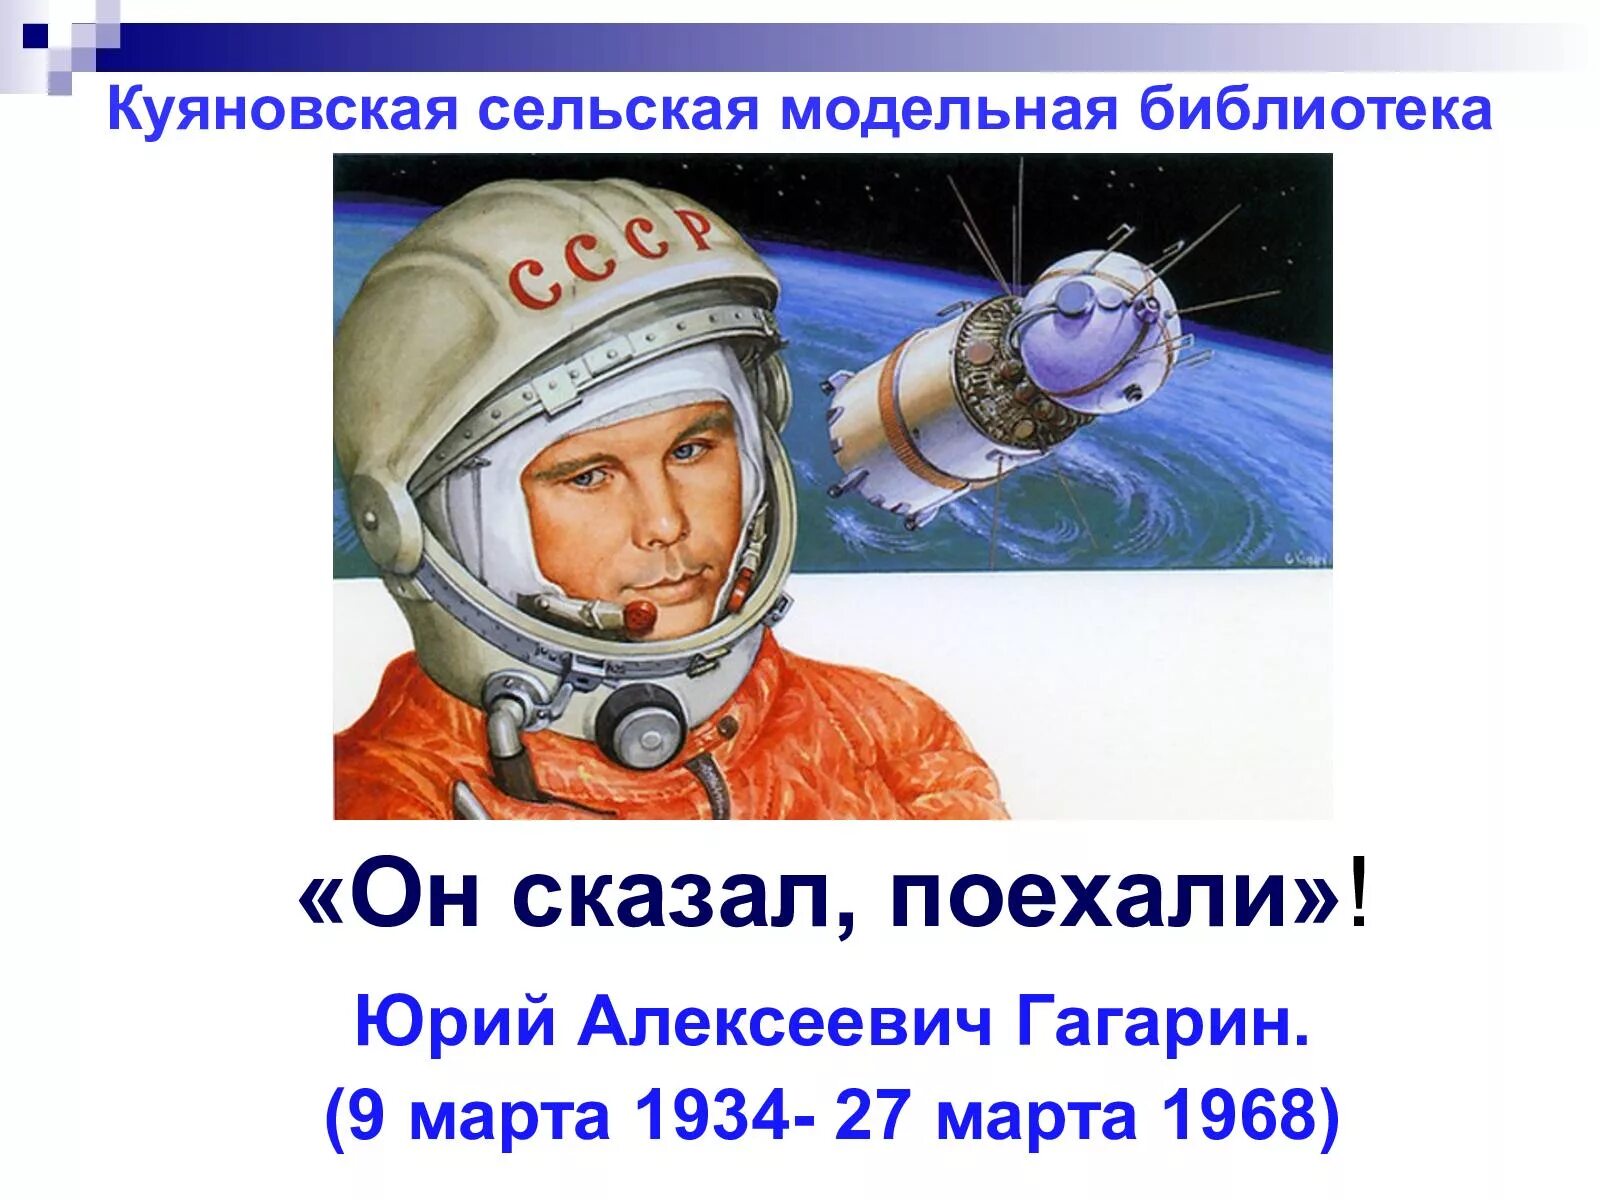 Гагарин говорит поехали. Он сказал поехали. Гагарин сказал поехали. День космонавтики.